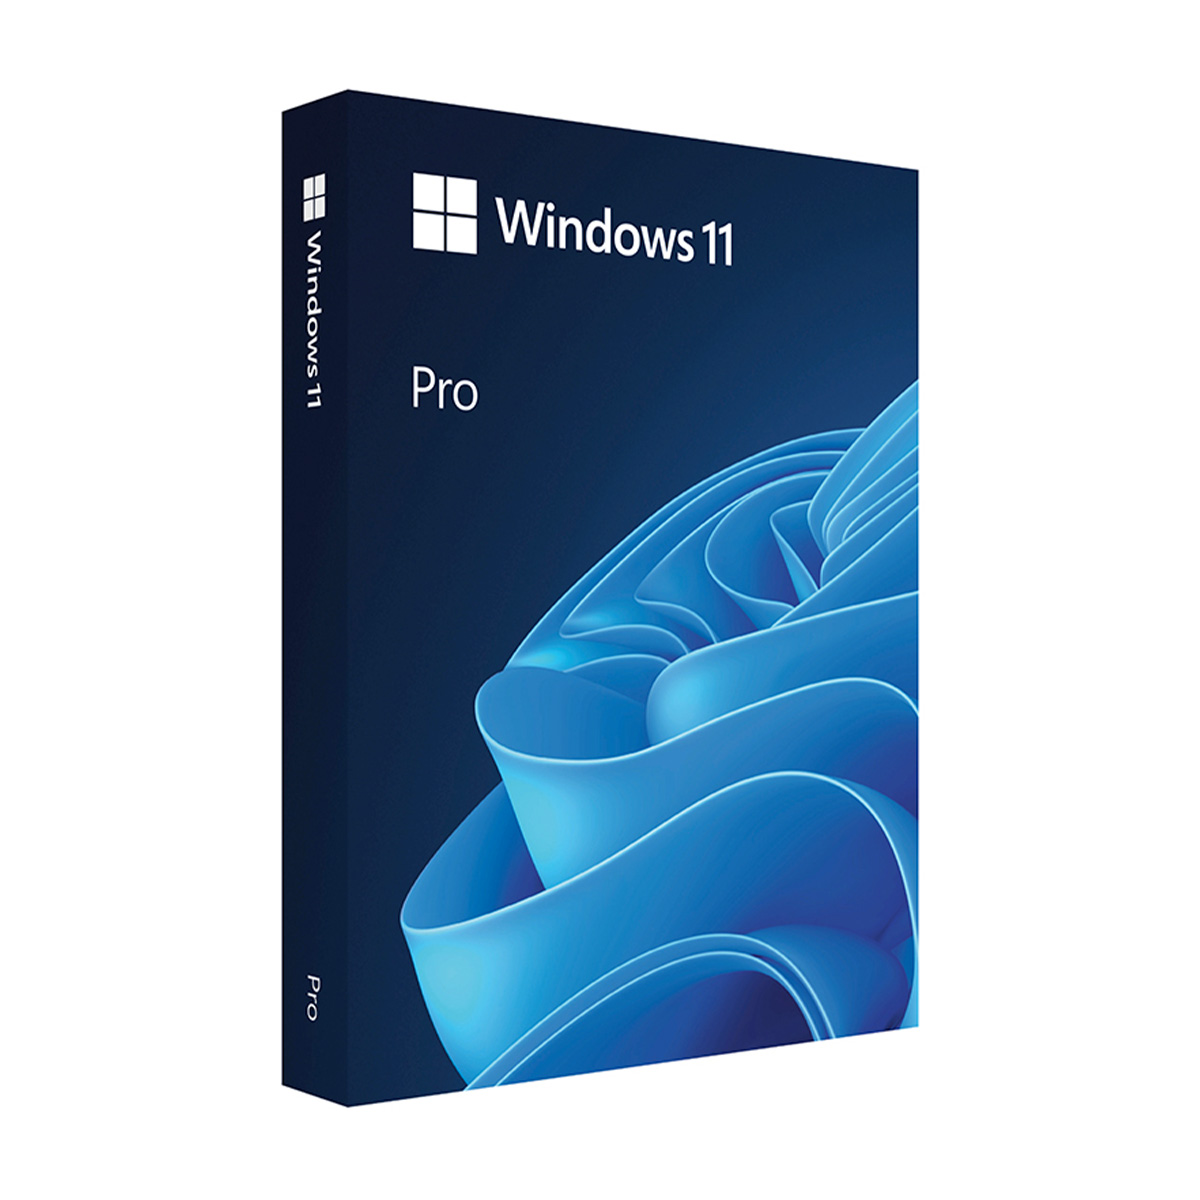 Featured image for “Microsoft マイクロソフト Windows 11 Pro 日本語版 HAV-00213”